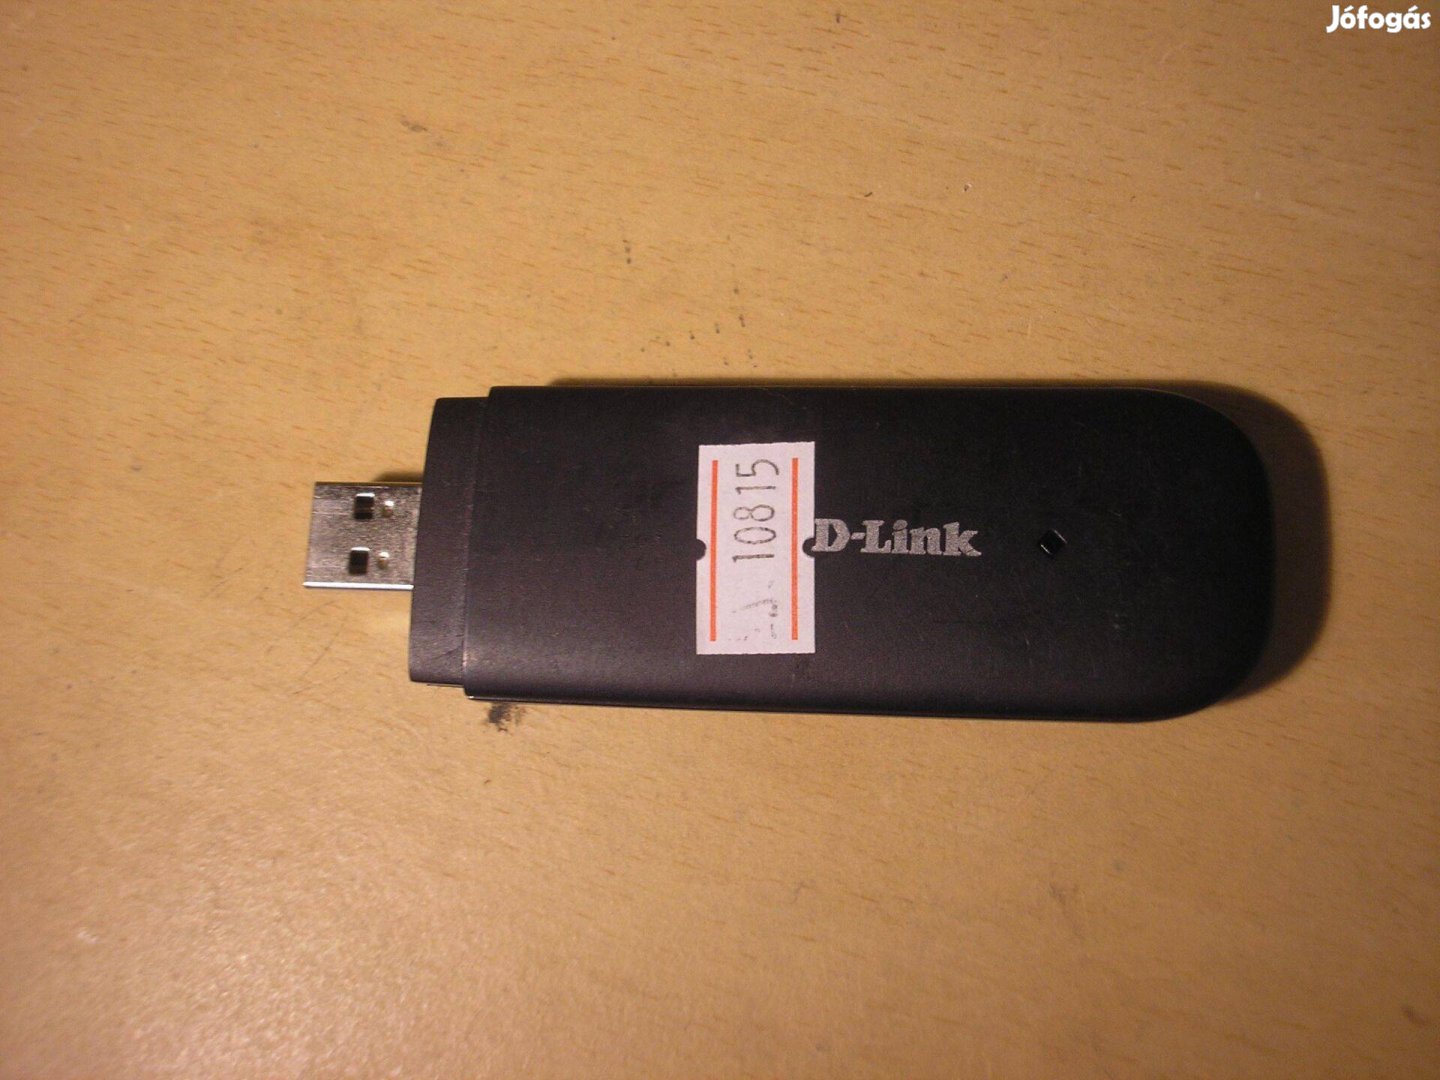 10815 D-Link DWM-222 A1 1.1.2DT 4G USB modem T-mobile?